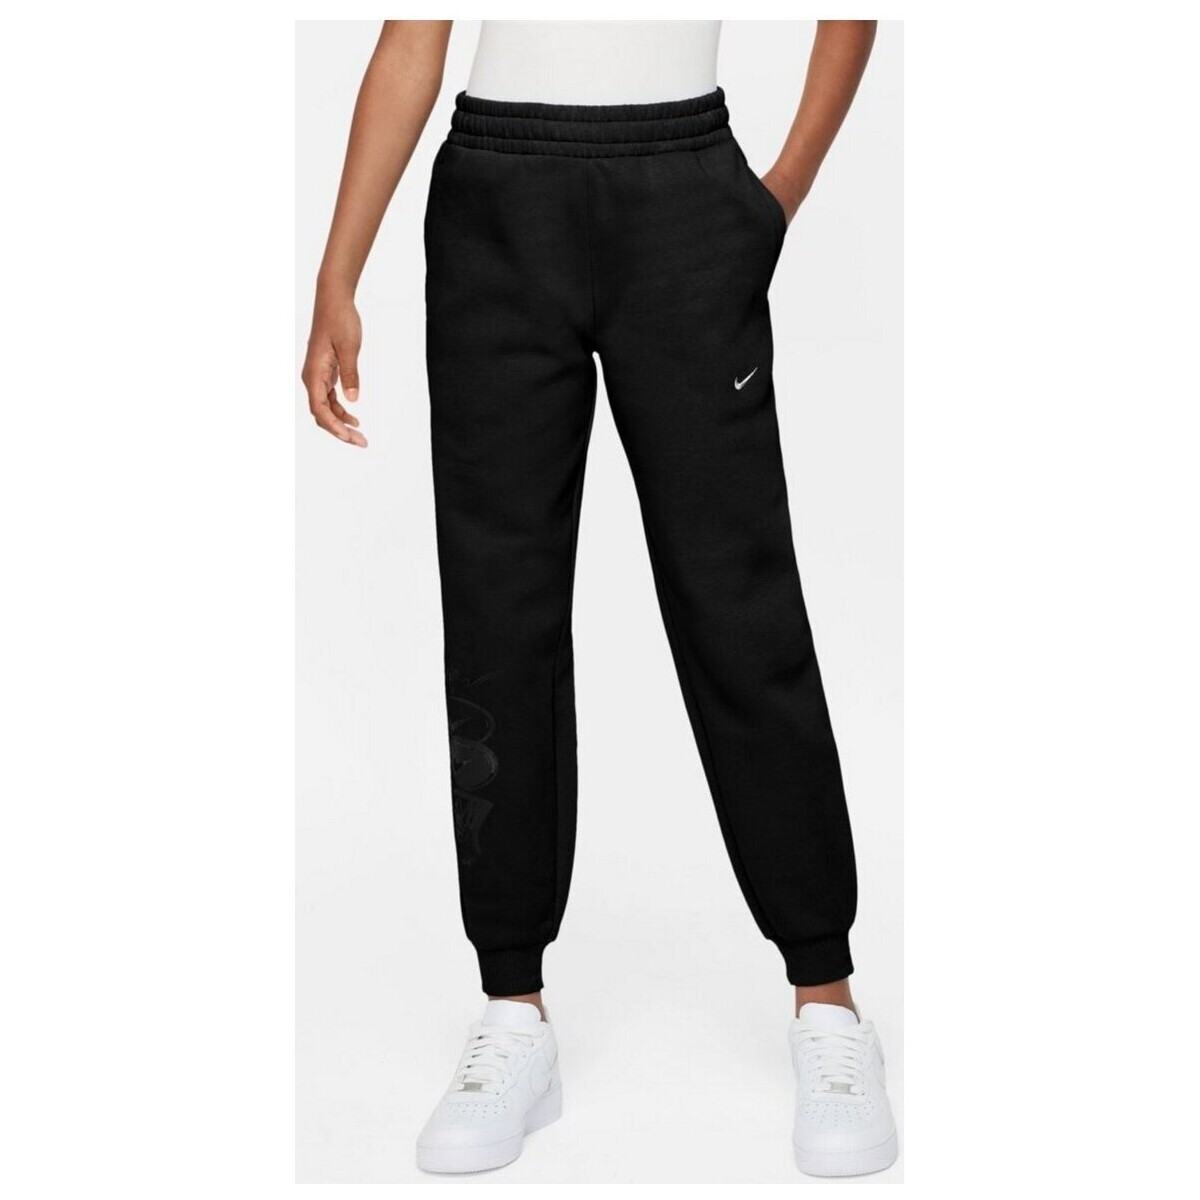 Textiel Jongens Broeken / Pantalons Nike  Zwart